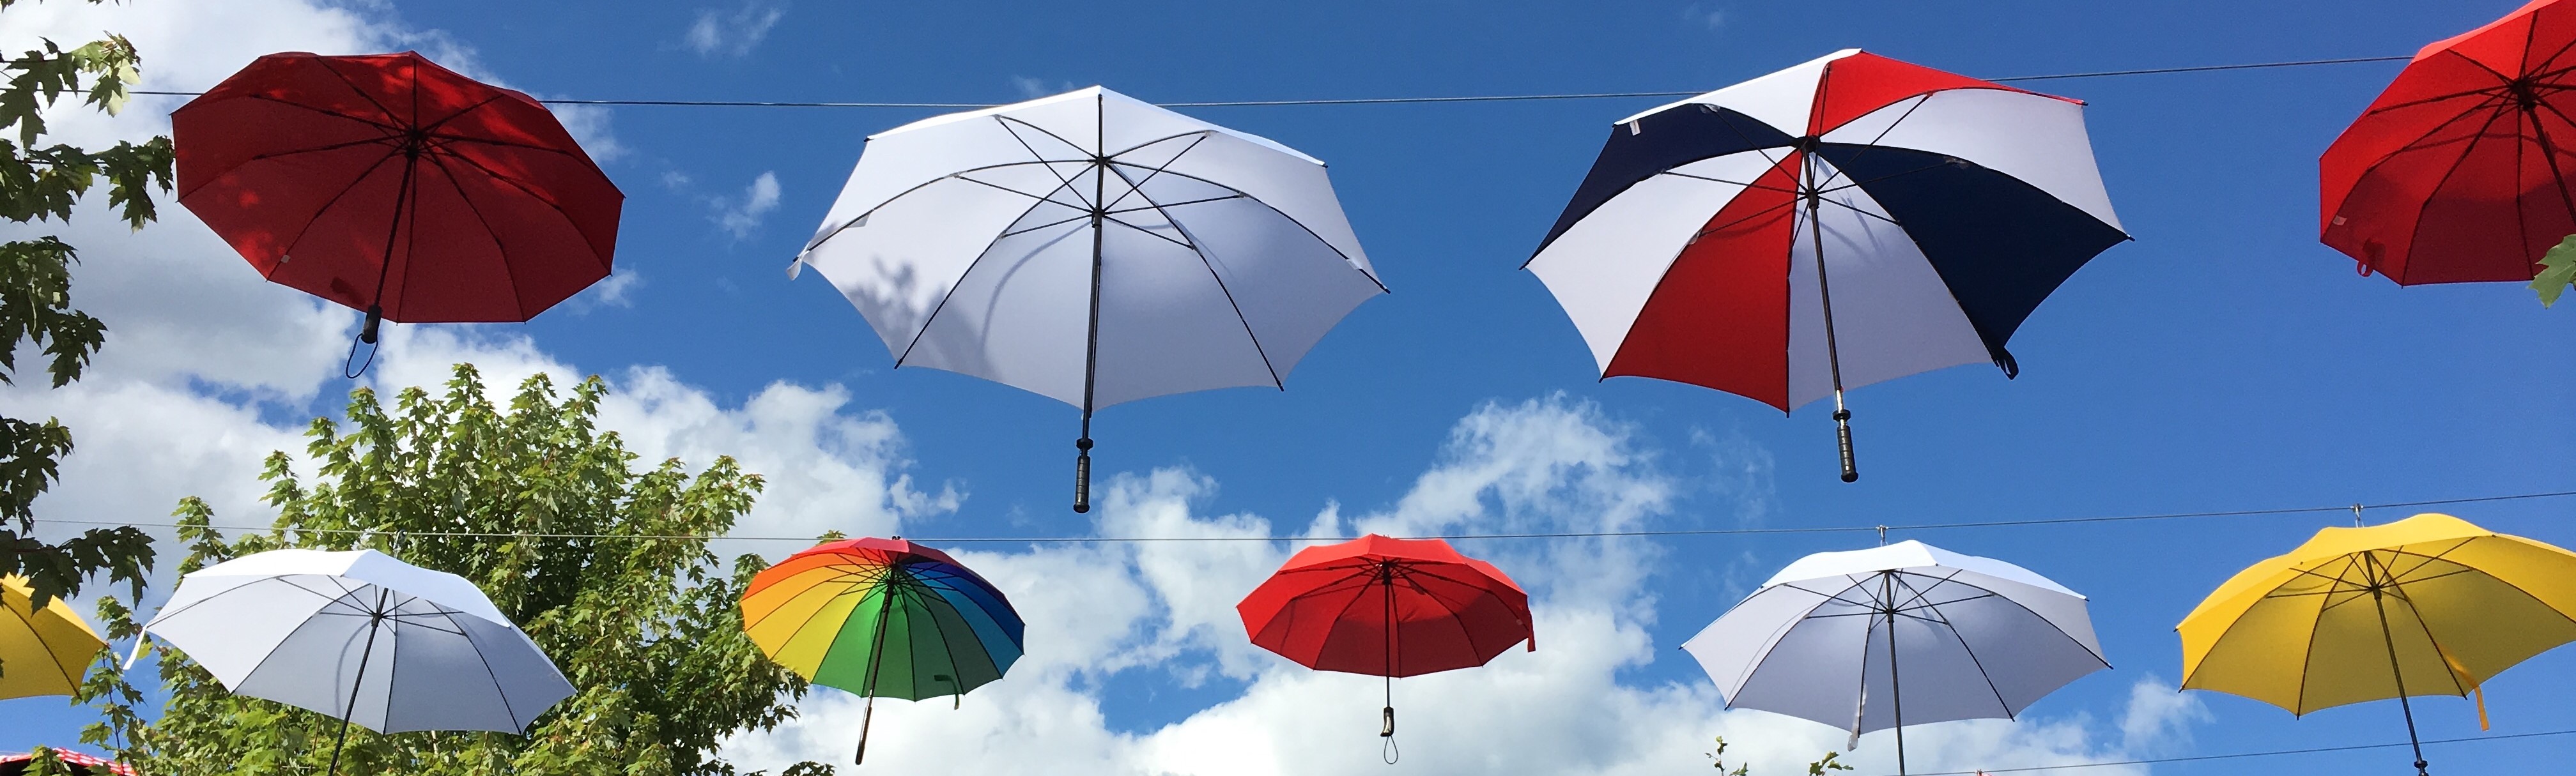 Acadian coloured umbrellas